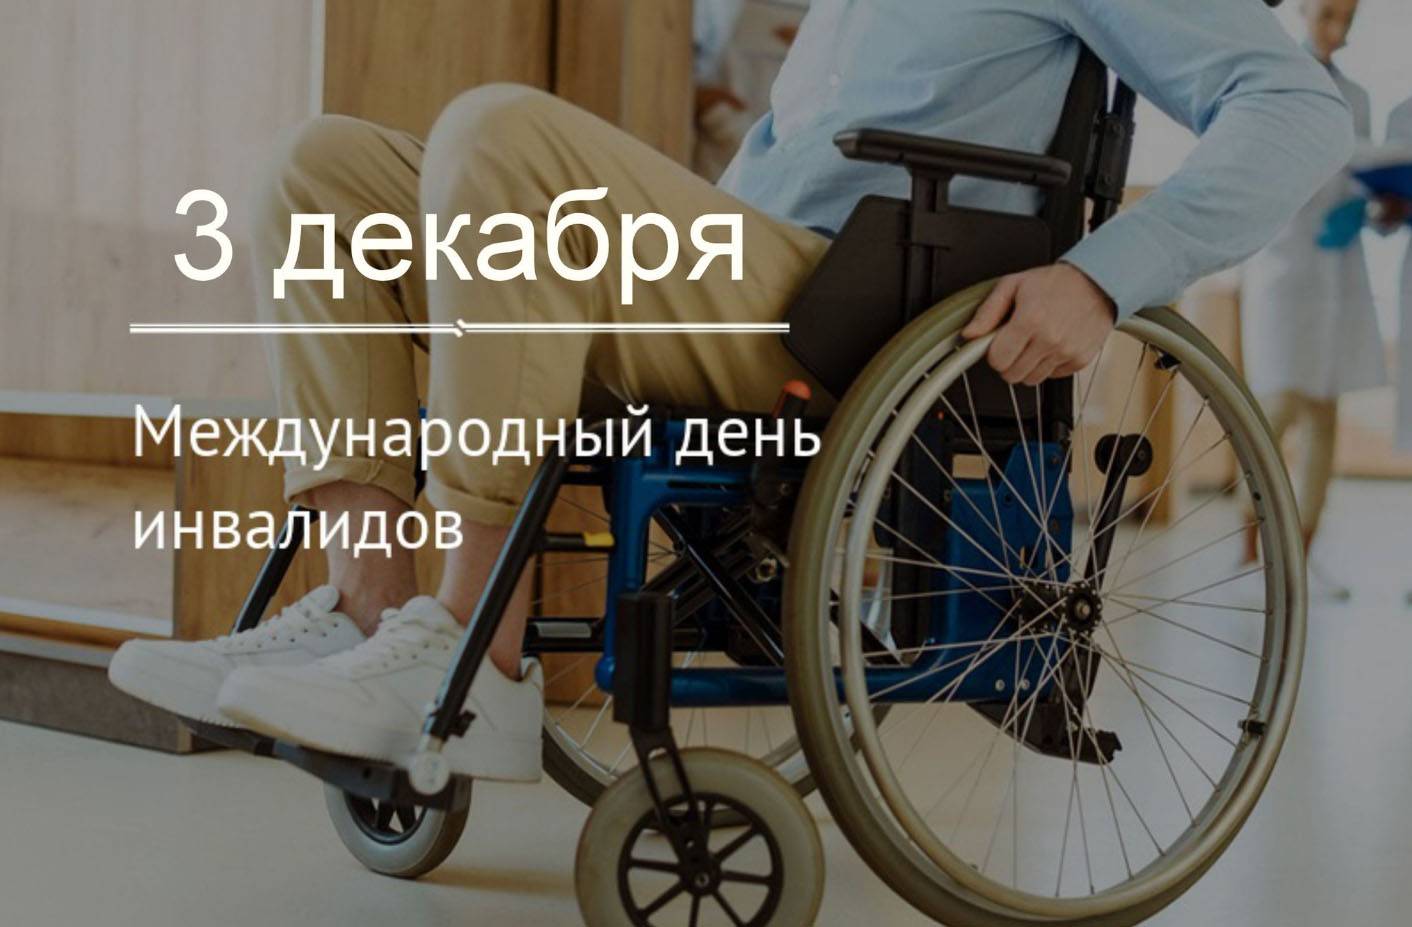 Международный день инвалидов 3 декабря 2021: дата и традиции